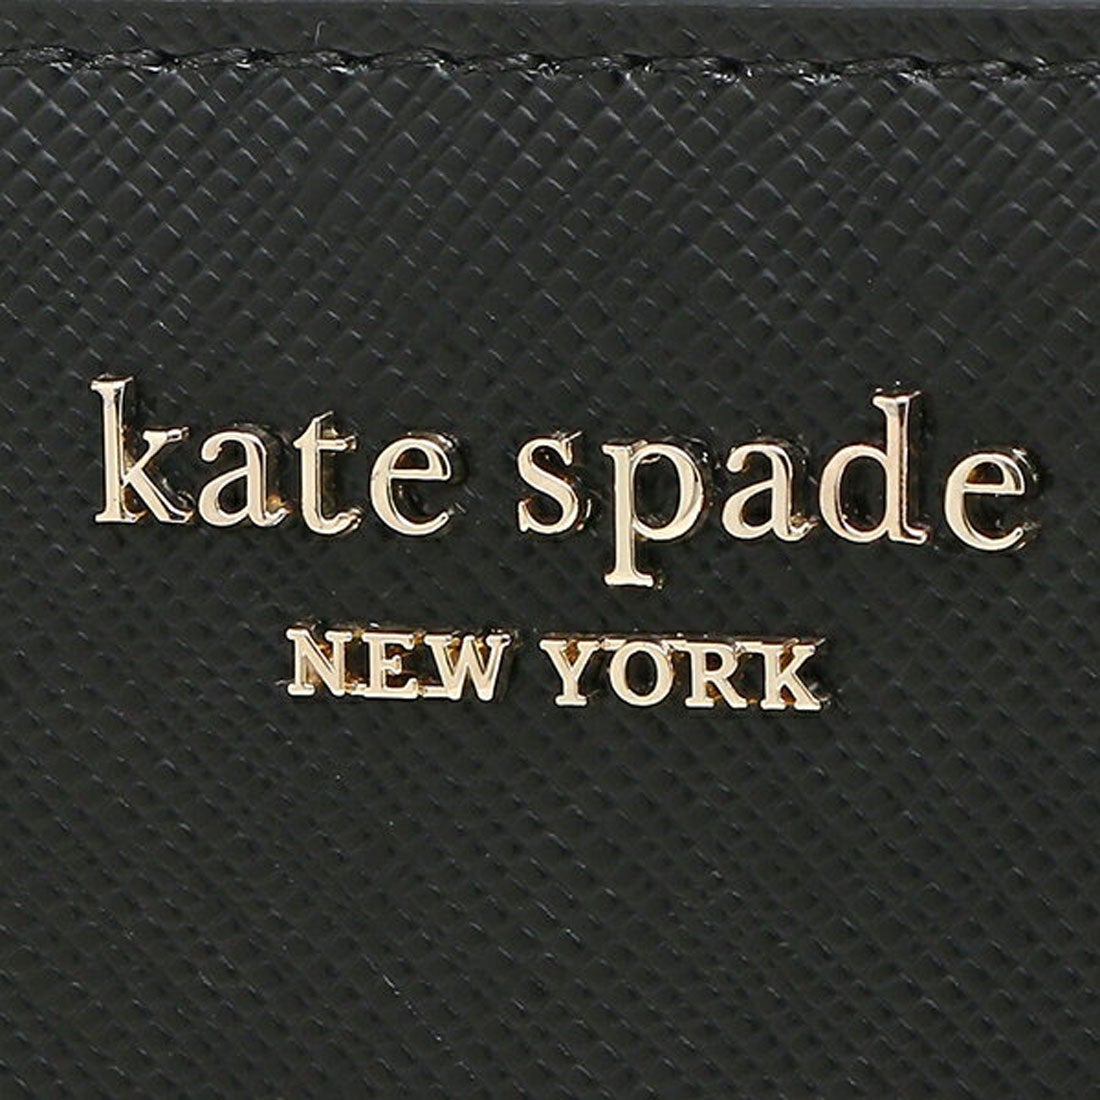 ケイトスペードニューヨーク kate spade new york 財布 長財布